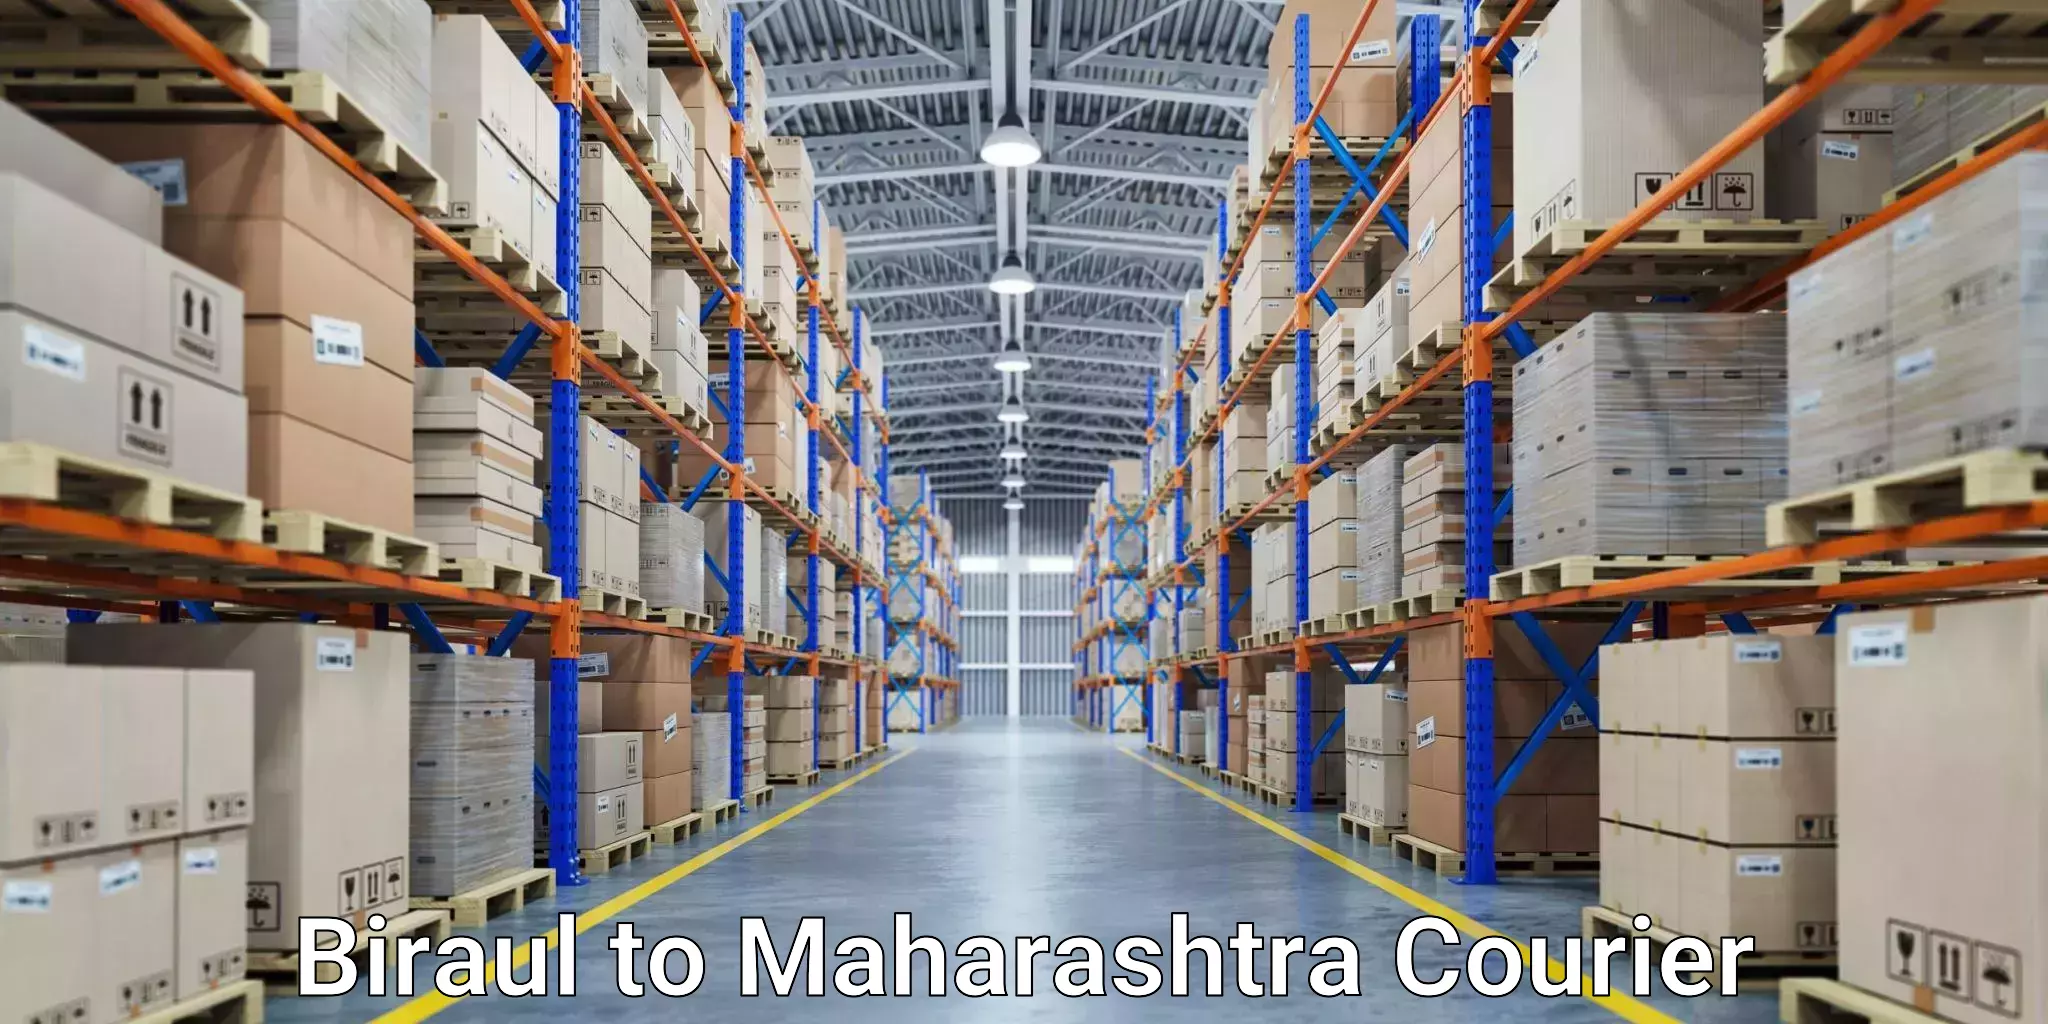 Express delivery capabilities Biraul to Maharashtra